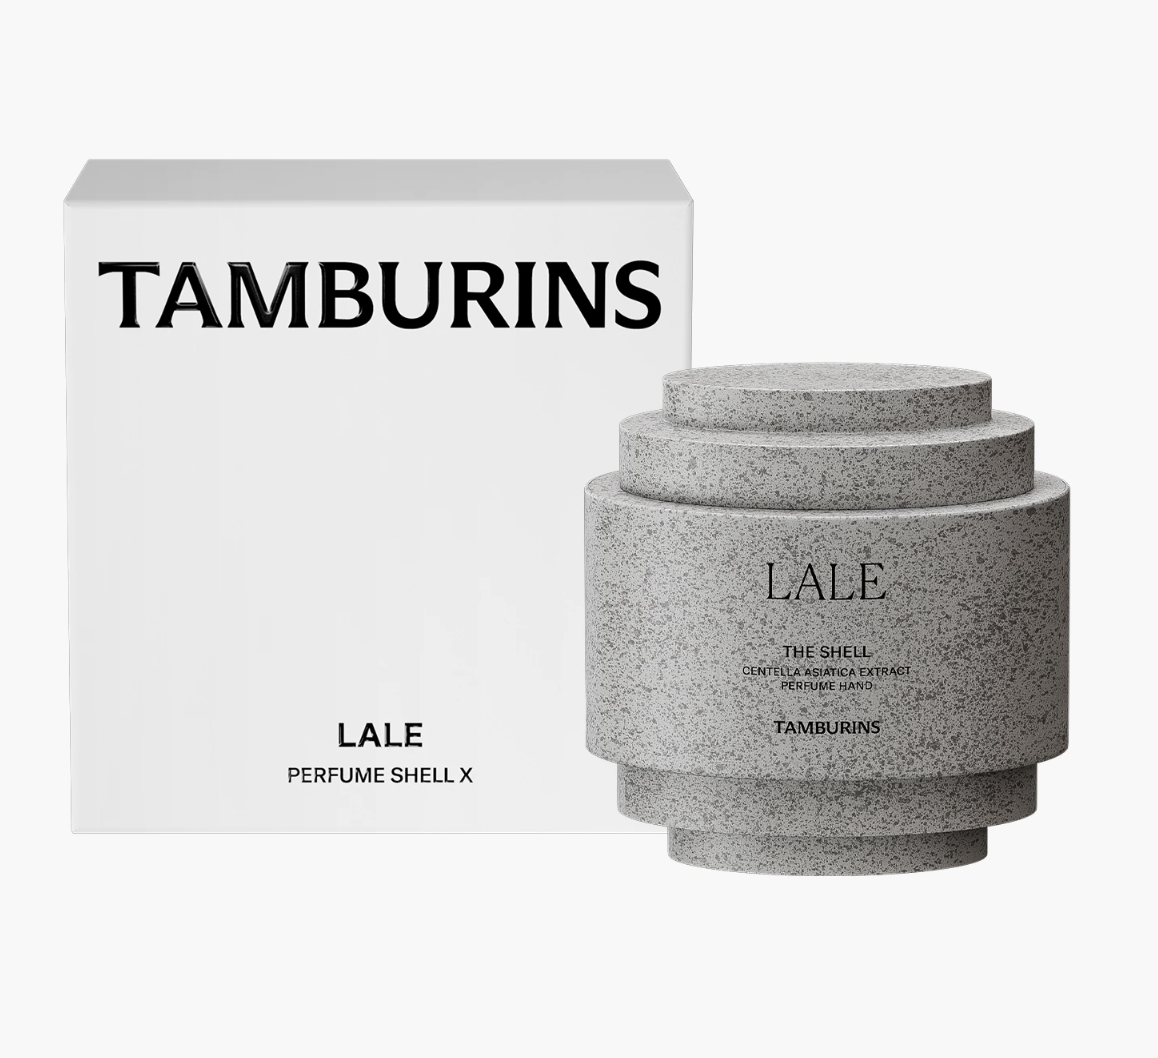 Tamburins-貝殼香氛護手霜-LALE